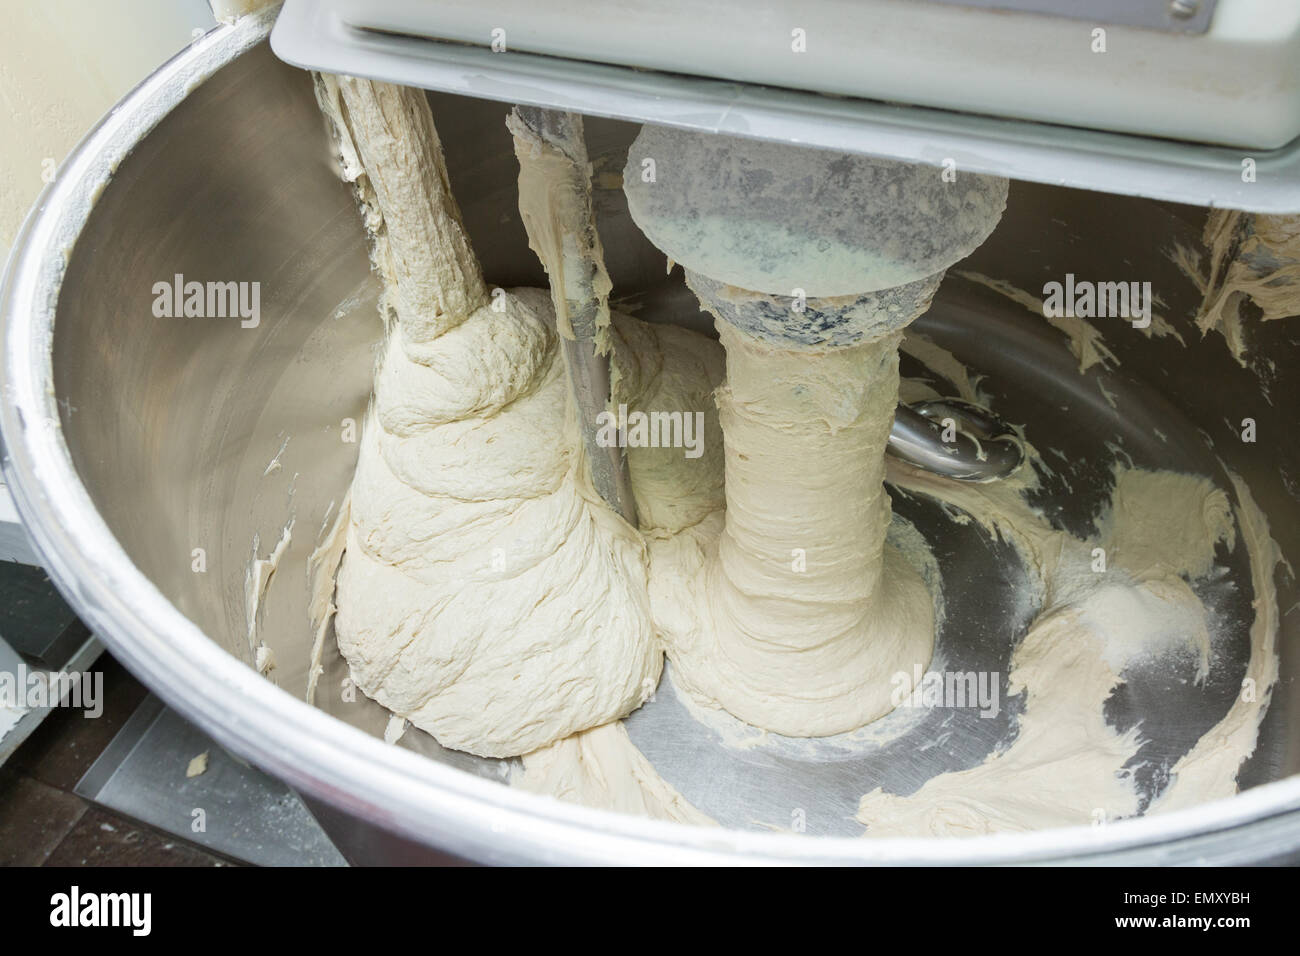 Teig kneten auf einer Brotfabrik Bäckerei Produktion Stockfoto